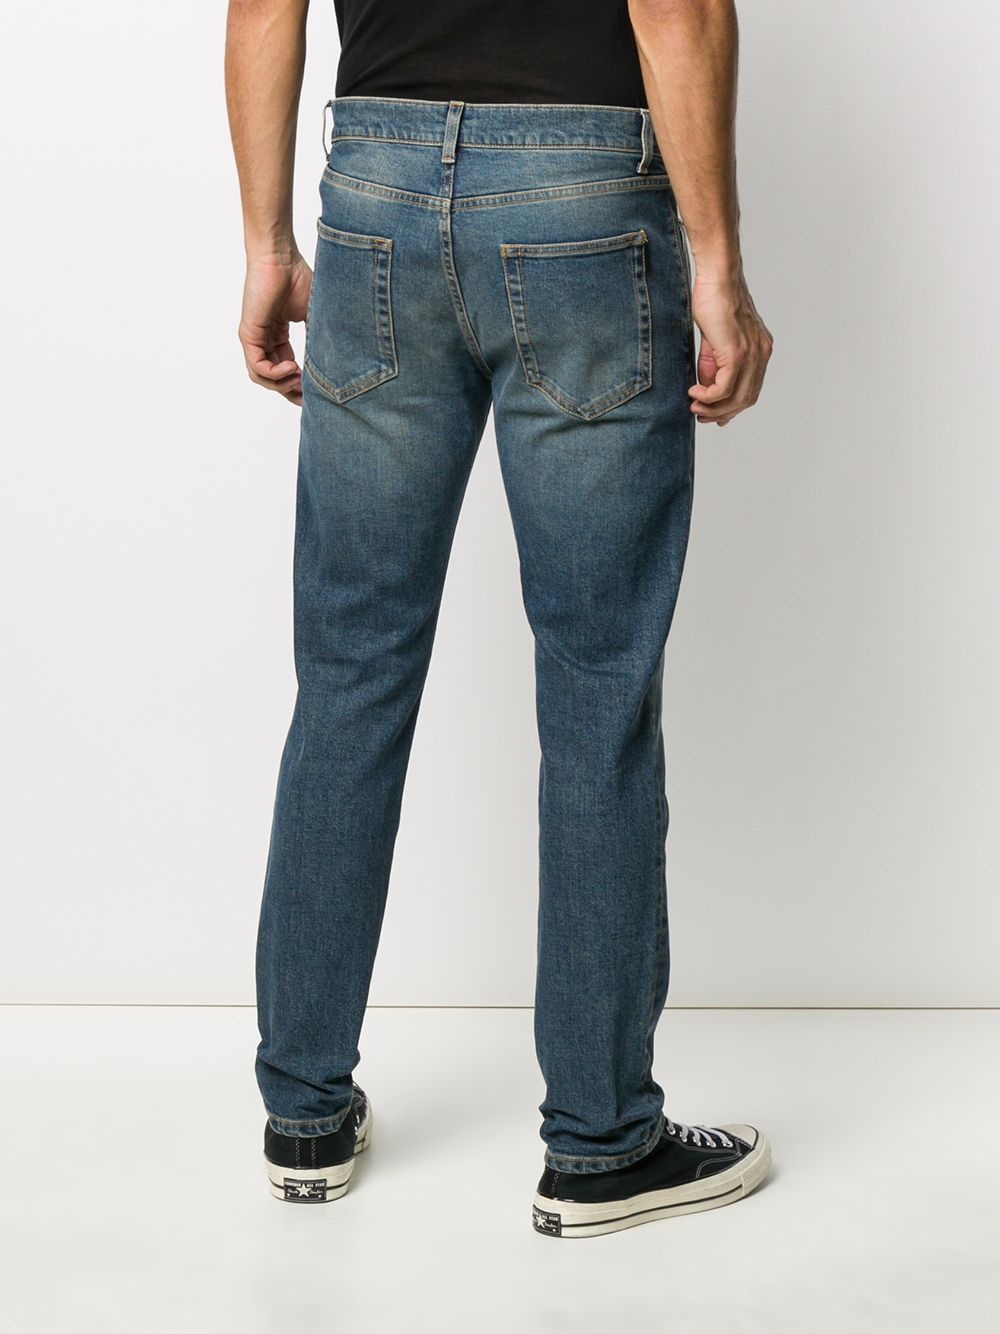 фото Saint laurent джинсы с эффектом потертости